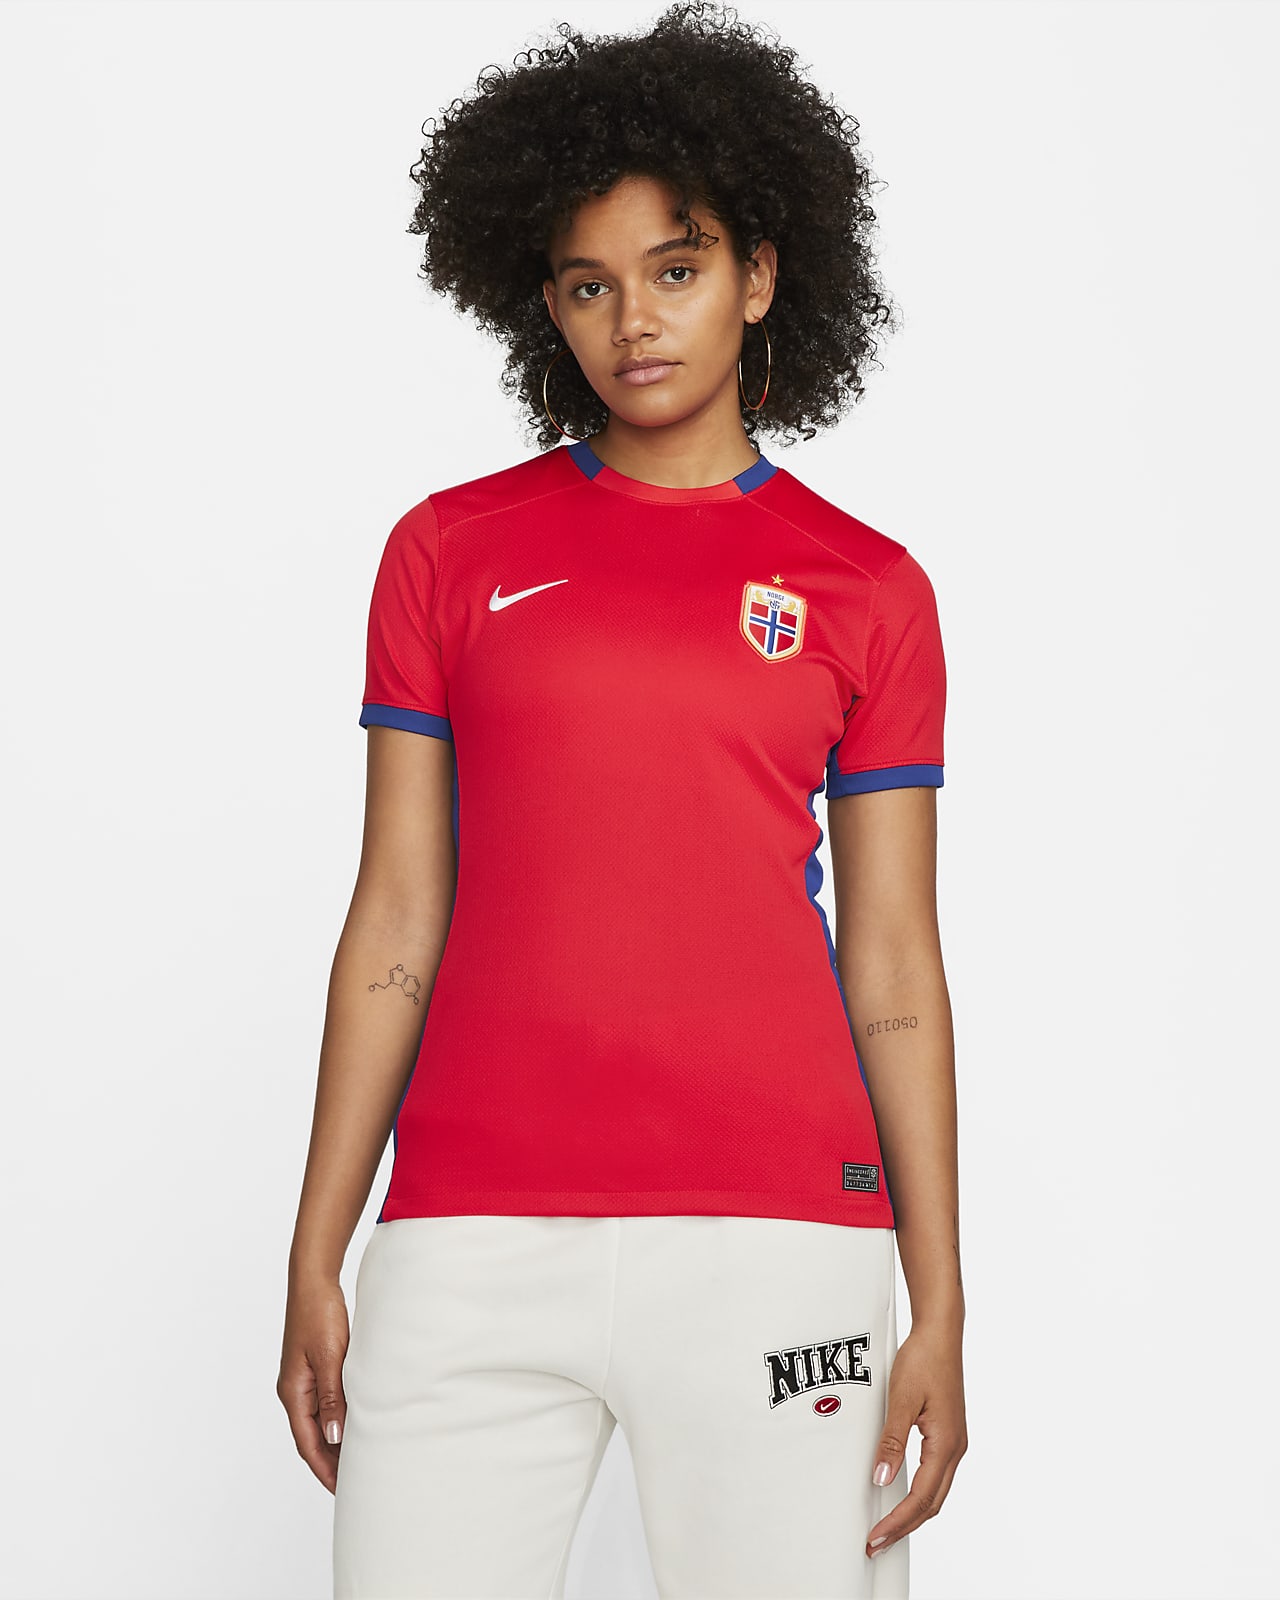 Nike Women's Vaporknit Soccer Jersey Size XS Volt Green Running Active New